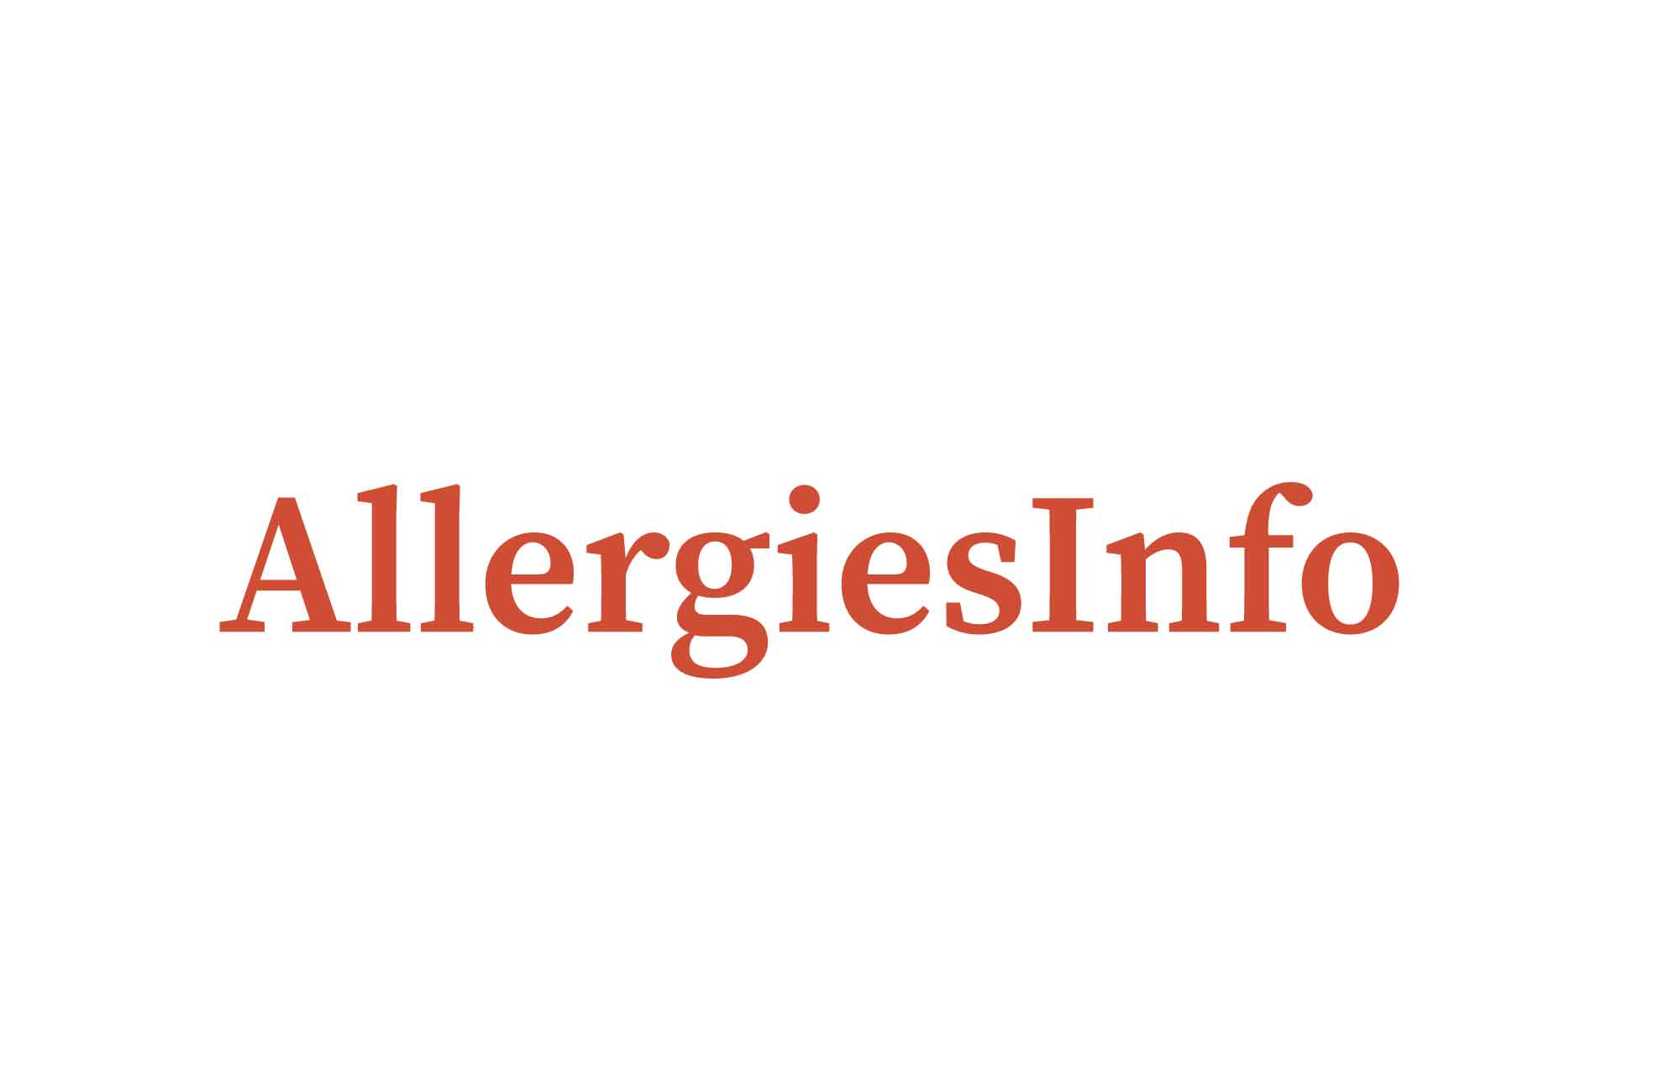 Allergies Info (allergiesinfo) | Pearltrees